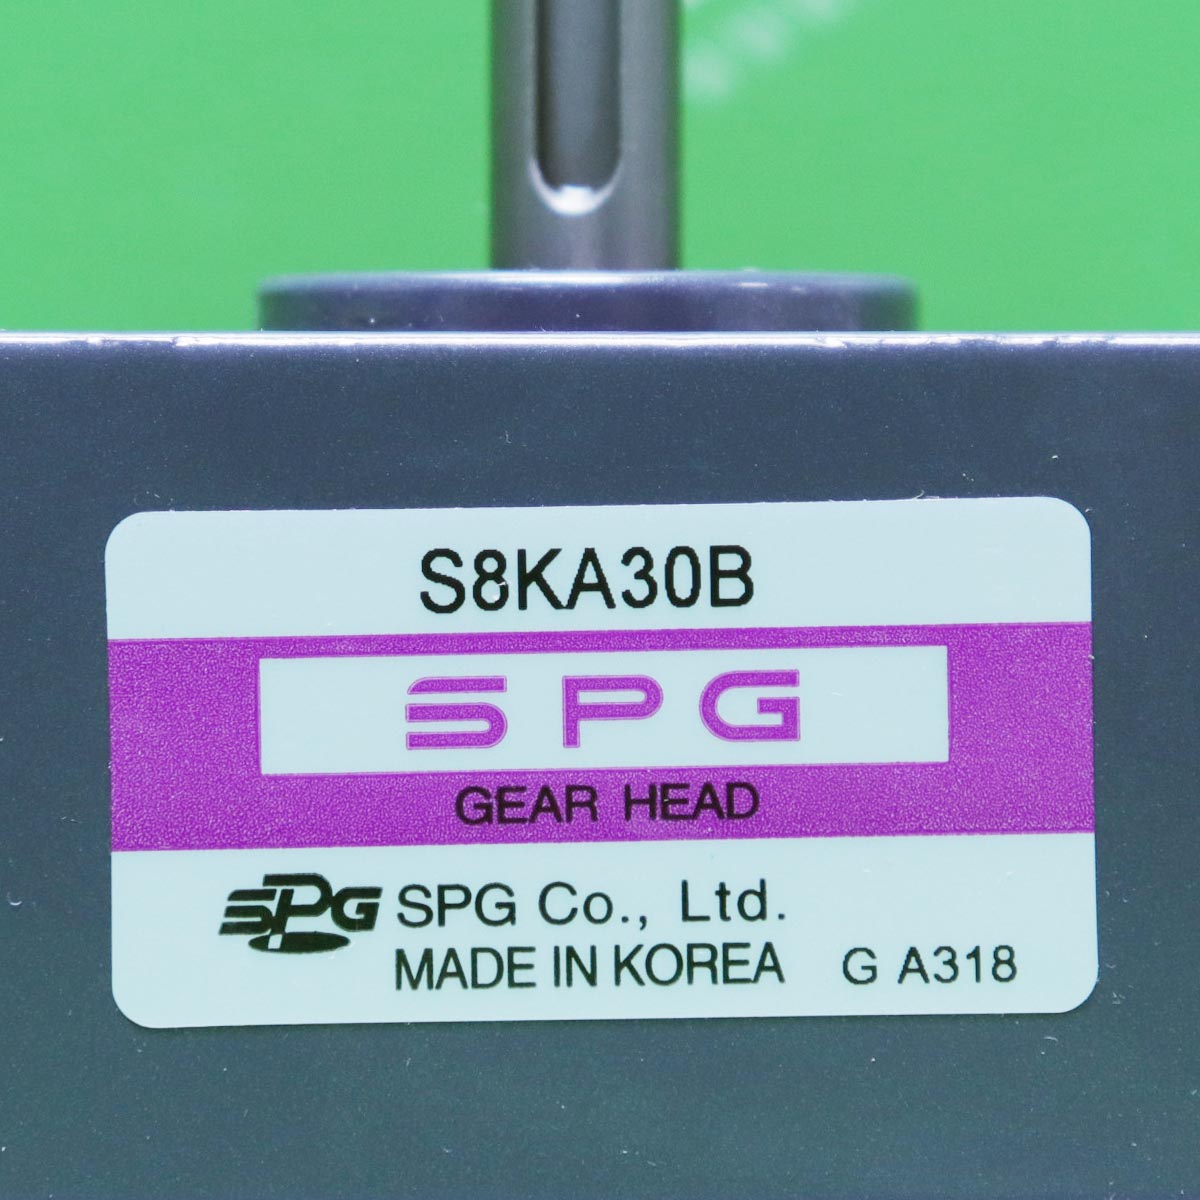 [신품] S8KA30B SPG (에스피지) 80mm 키타입 1:30 기어헤드 (납기 : 전화문의)